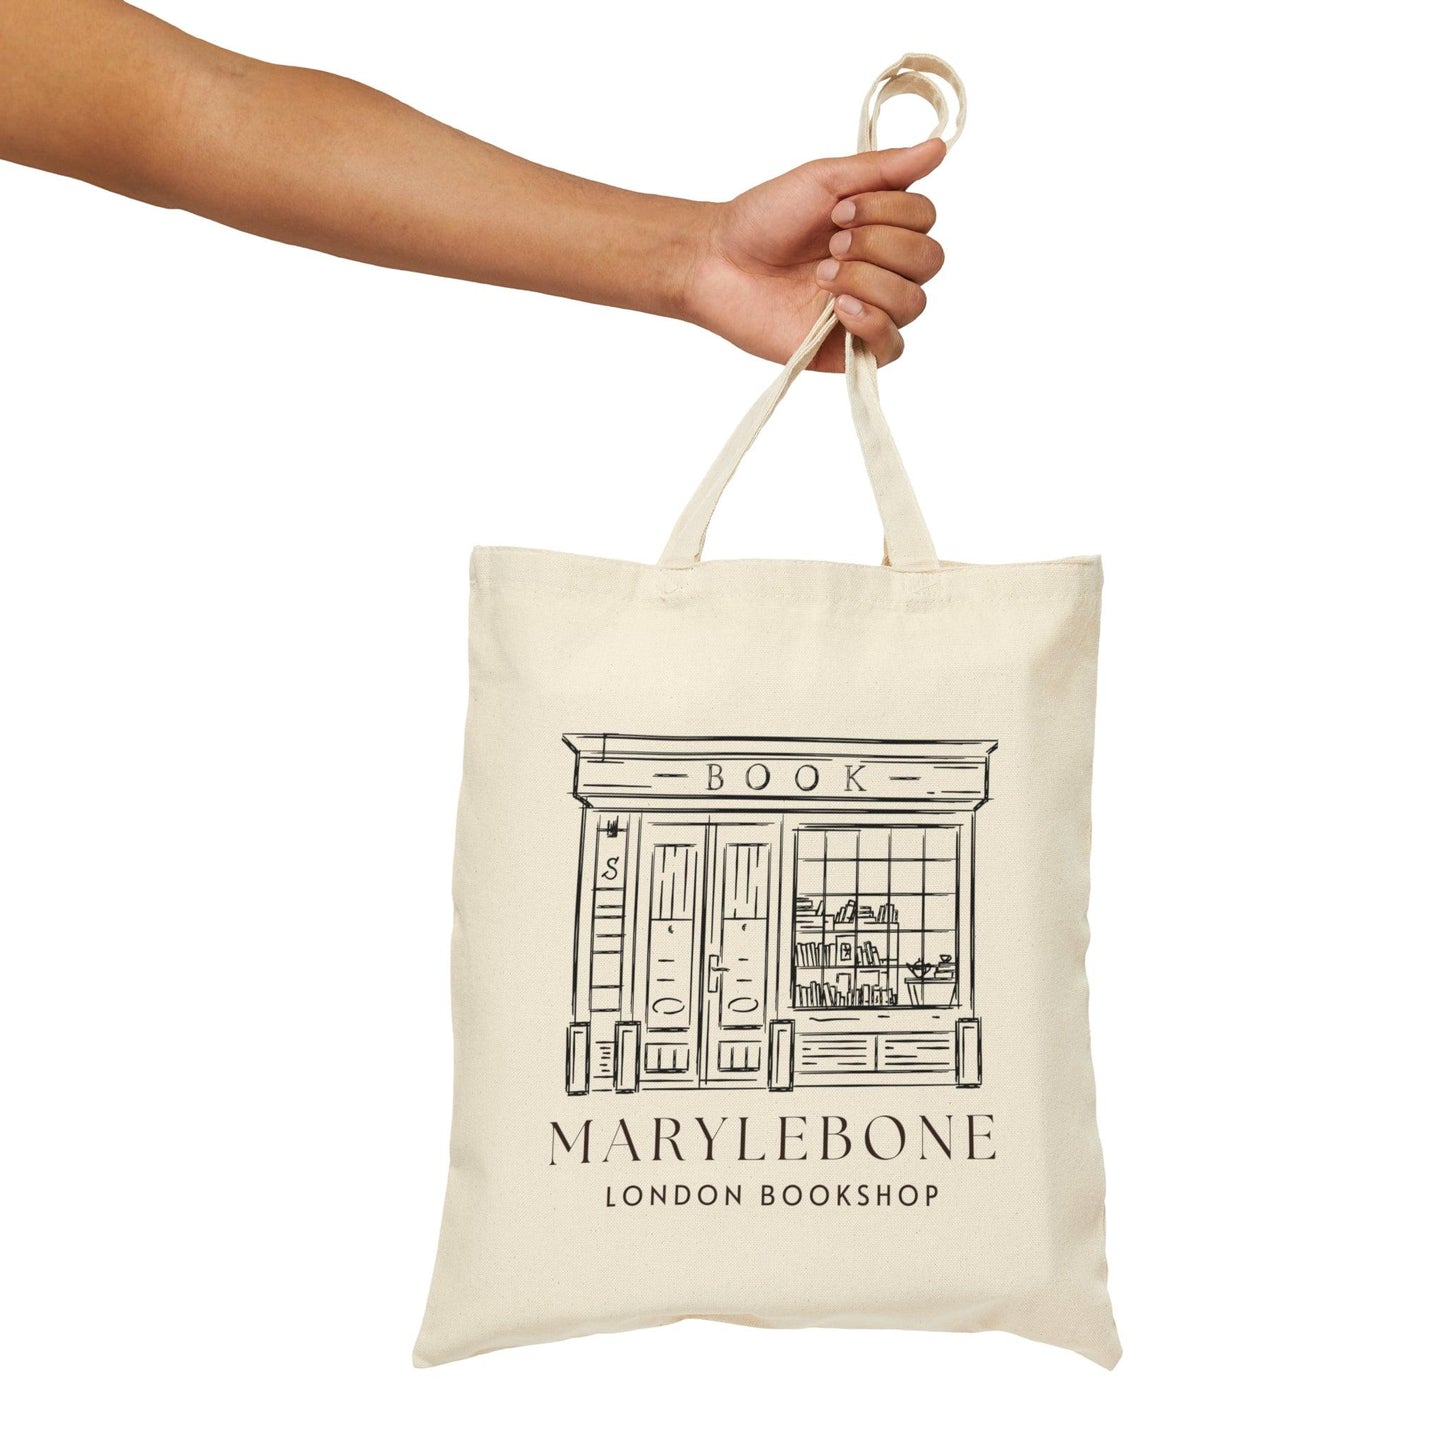 Marylebone London Bookshop Canvas Tote Bag - Departures Print Shop